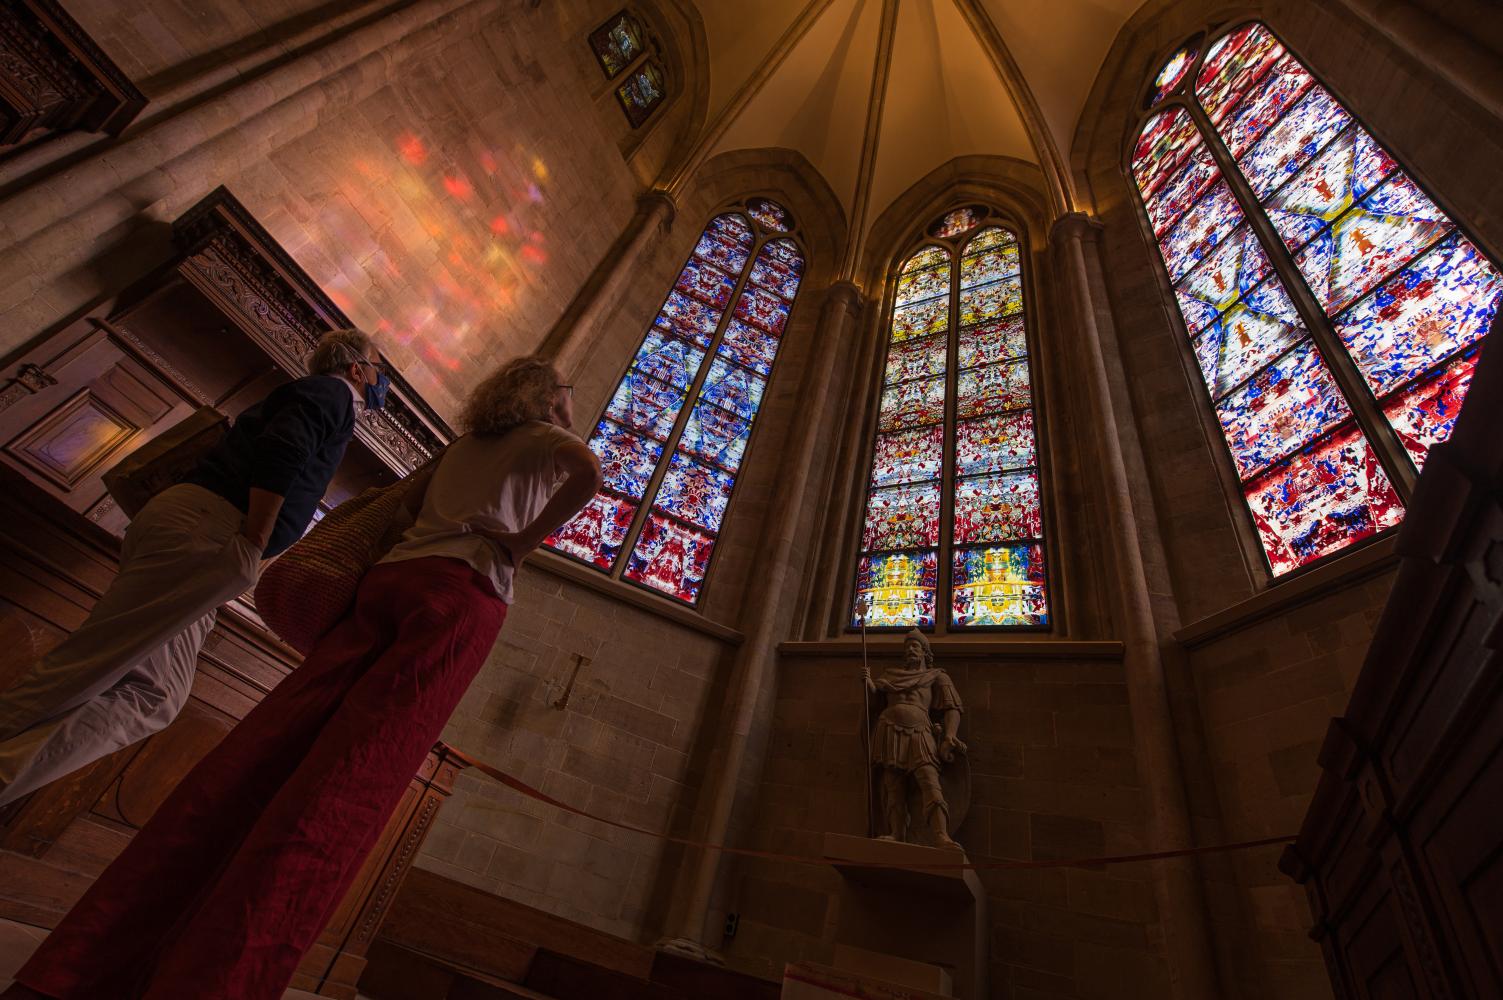 Kirchenfenster von Gerhard Richter in der Abtei Tholey